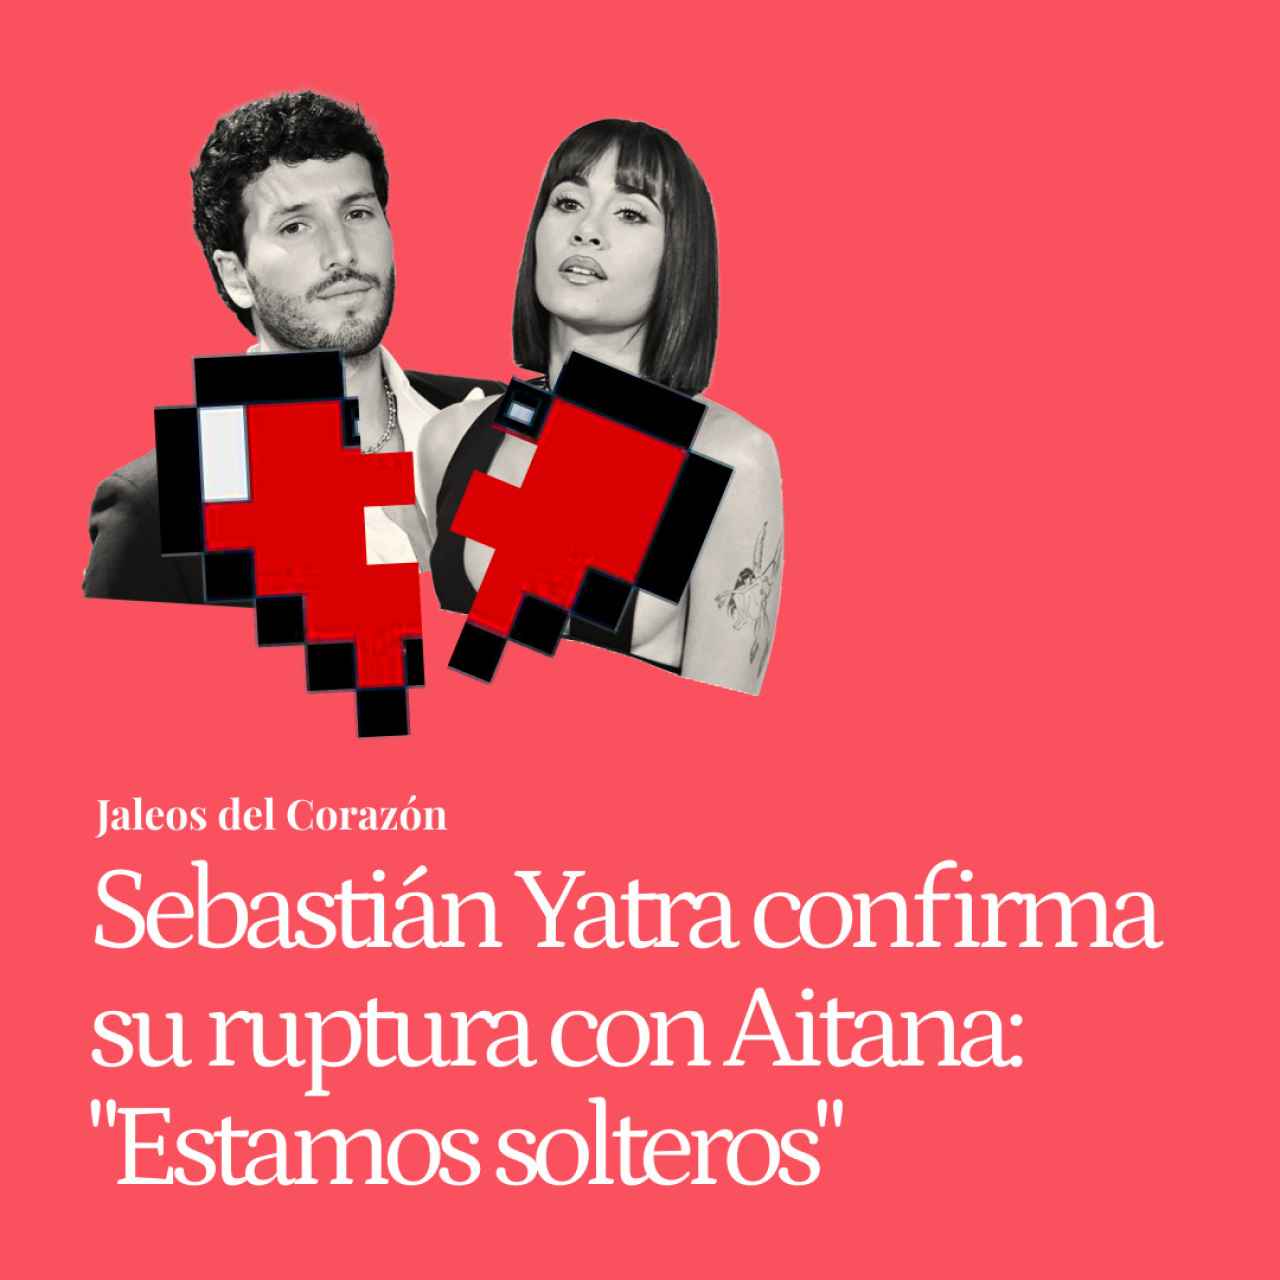 Sebastián Yatra confirma su ruptura con Aitana: "Los dos estamos solteros, cada quien viviendo su propio camino"